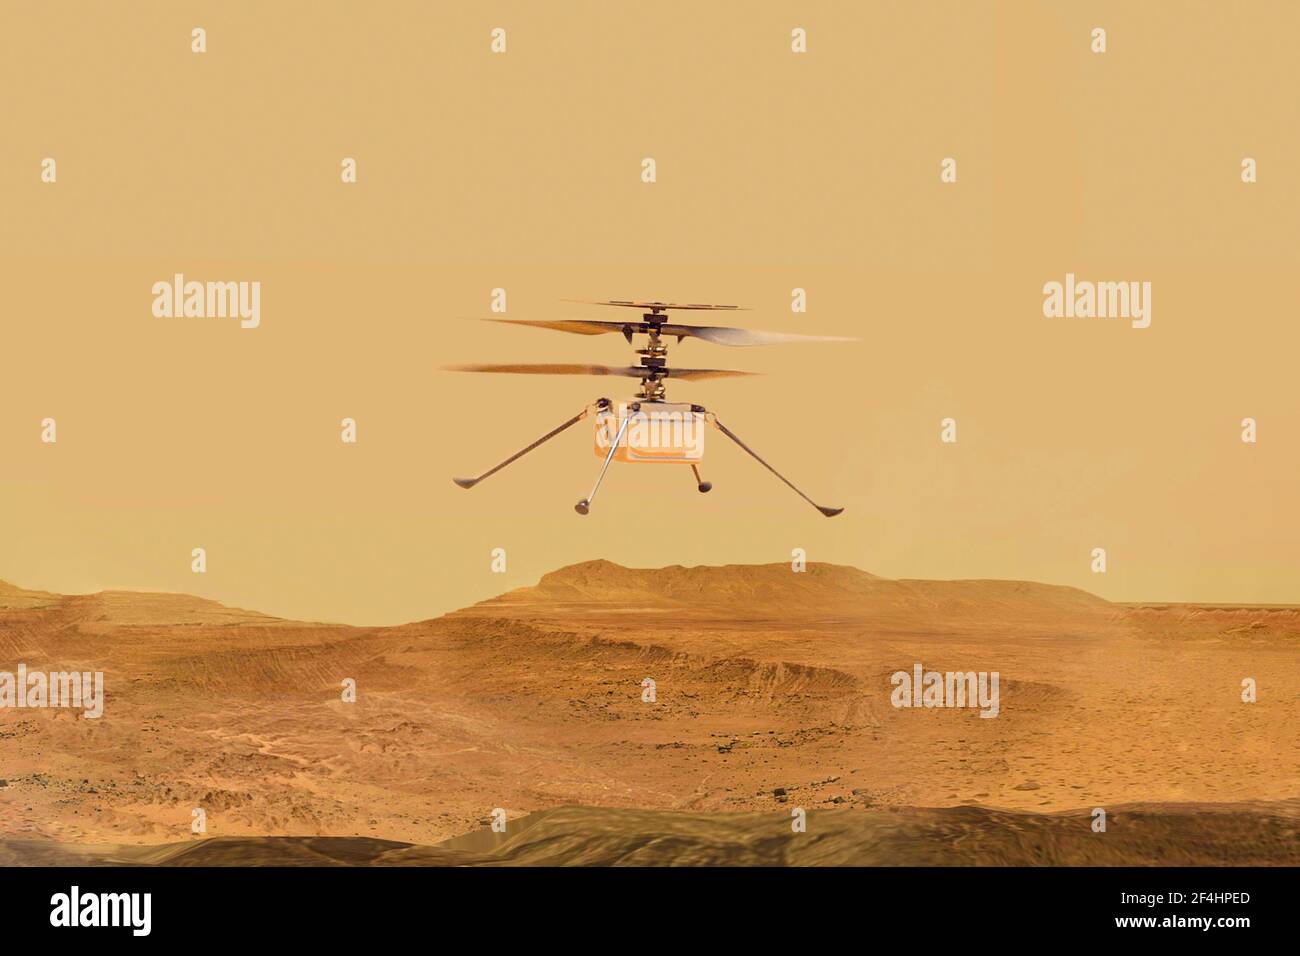 drone mars, hélicoptère Ingenuity éléments de cette image fournie par la NASA Illustration 3D Banque D'Images